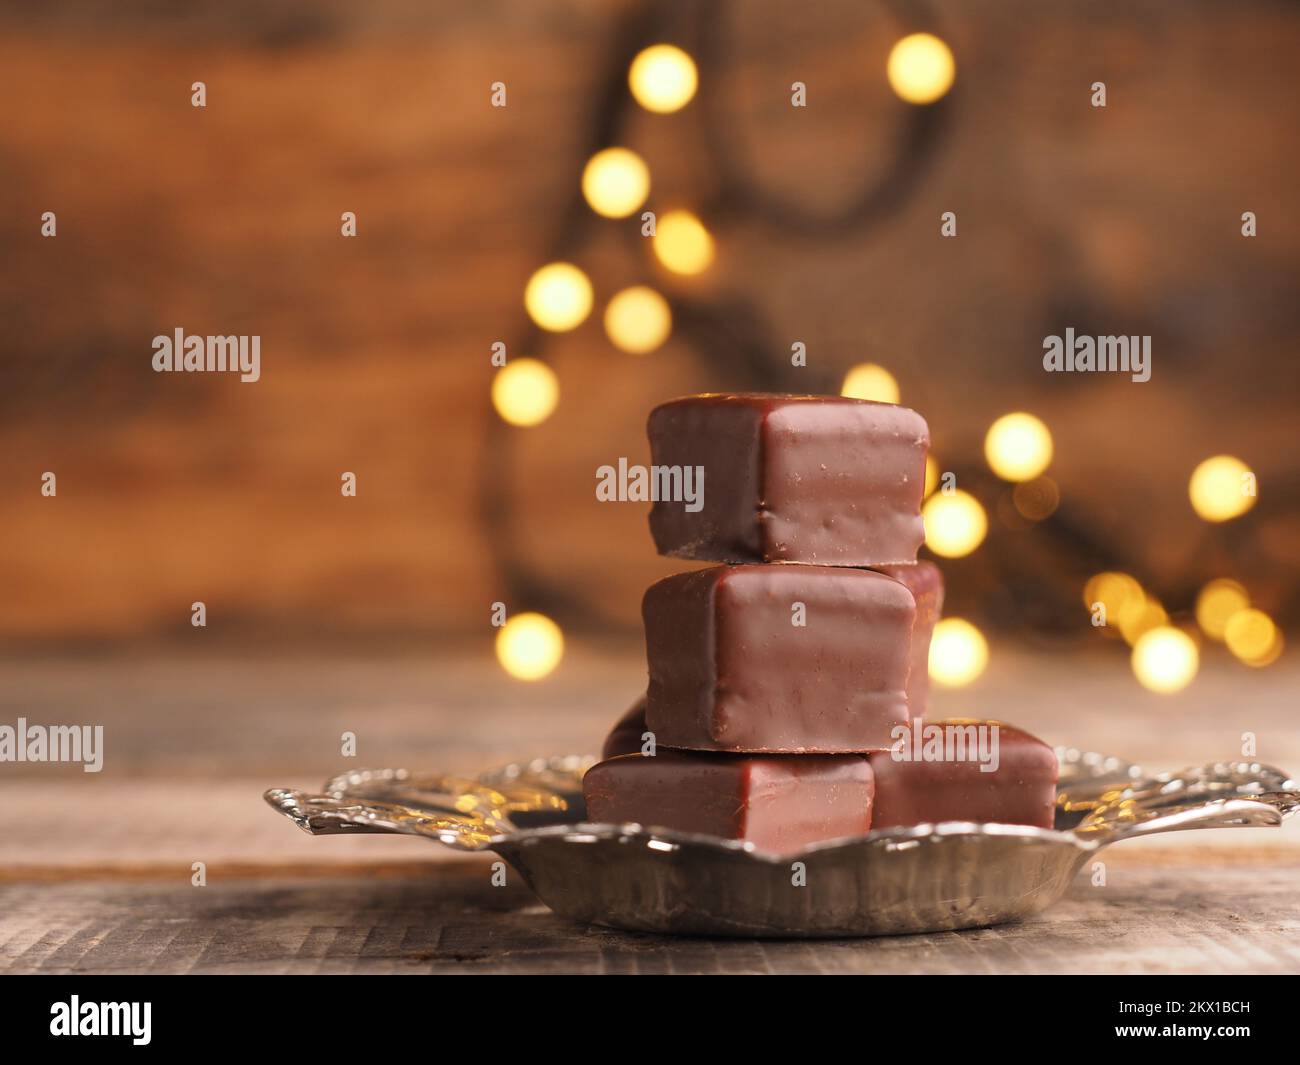 Dés de chocolat empilés sur une plaque argentée sur une table en bois avec des lumières de Noël Banque D'Images